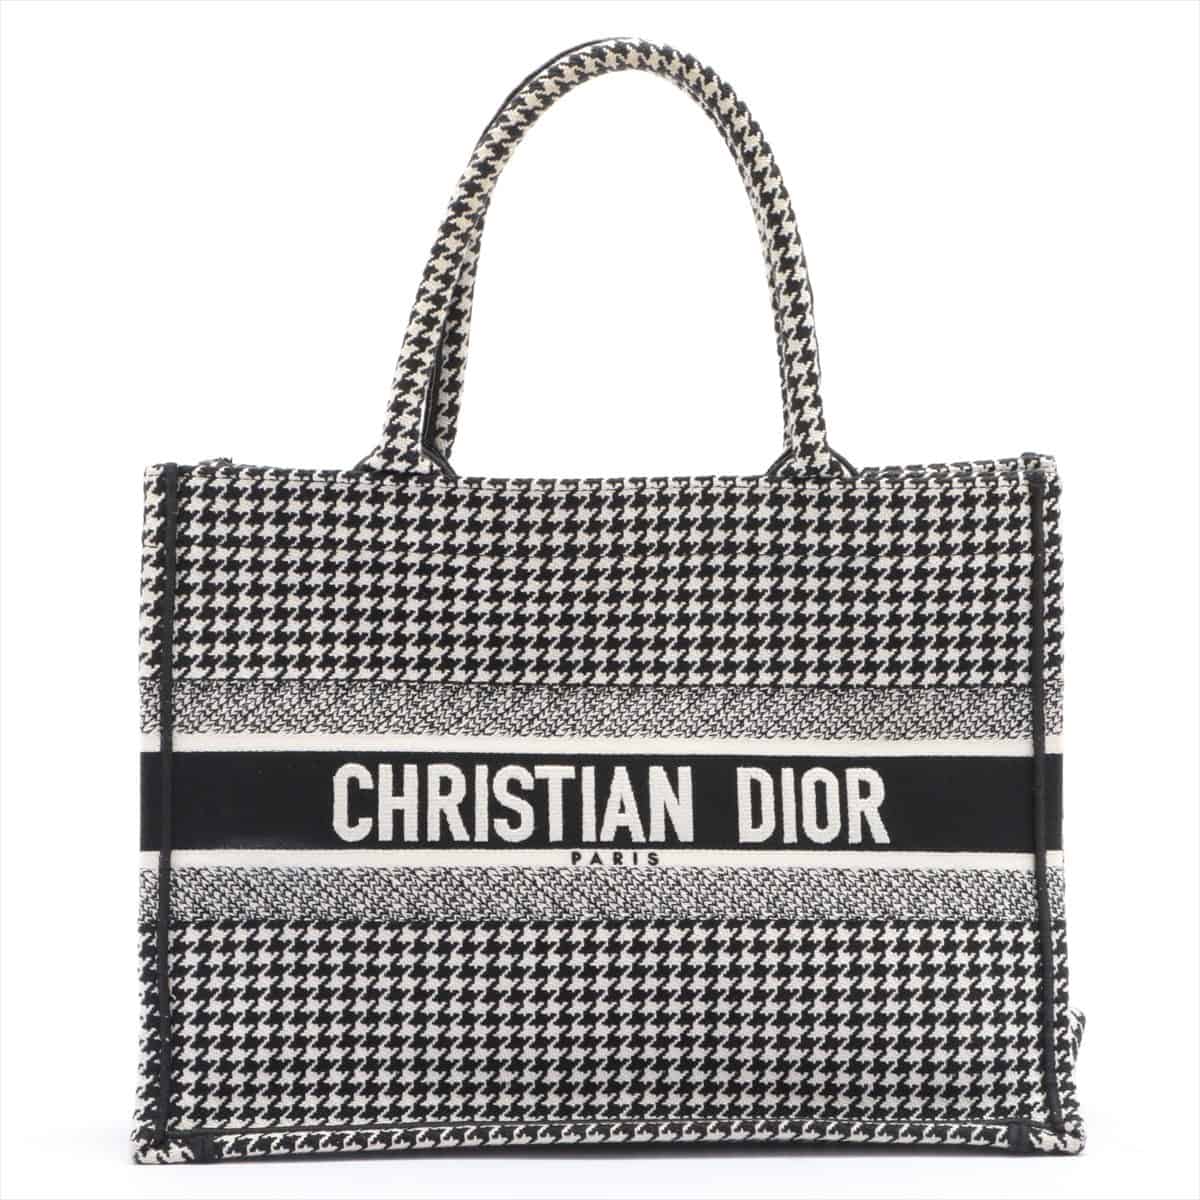 Christian Dior Book Tote canvas Tote bag Black × White